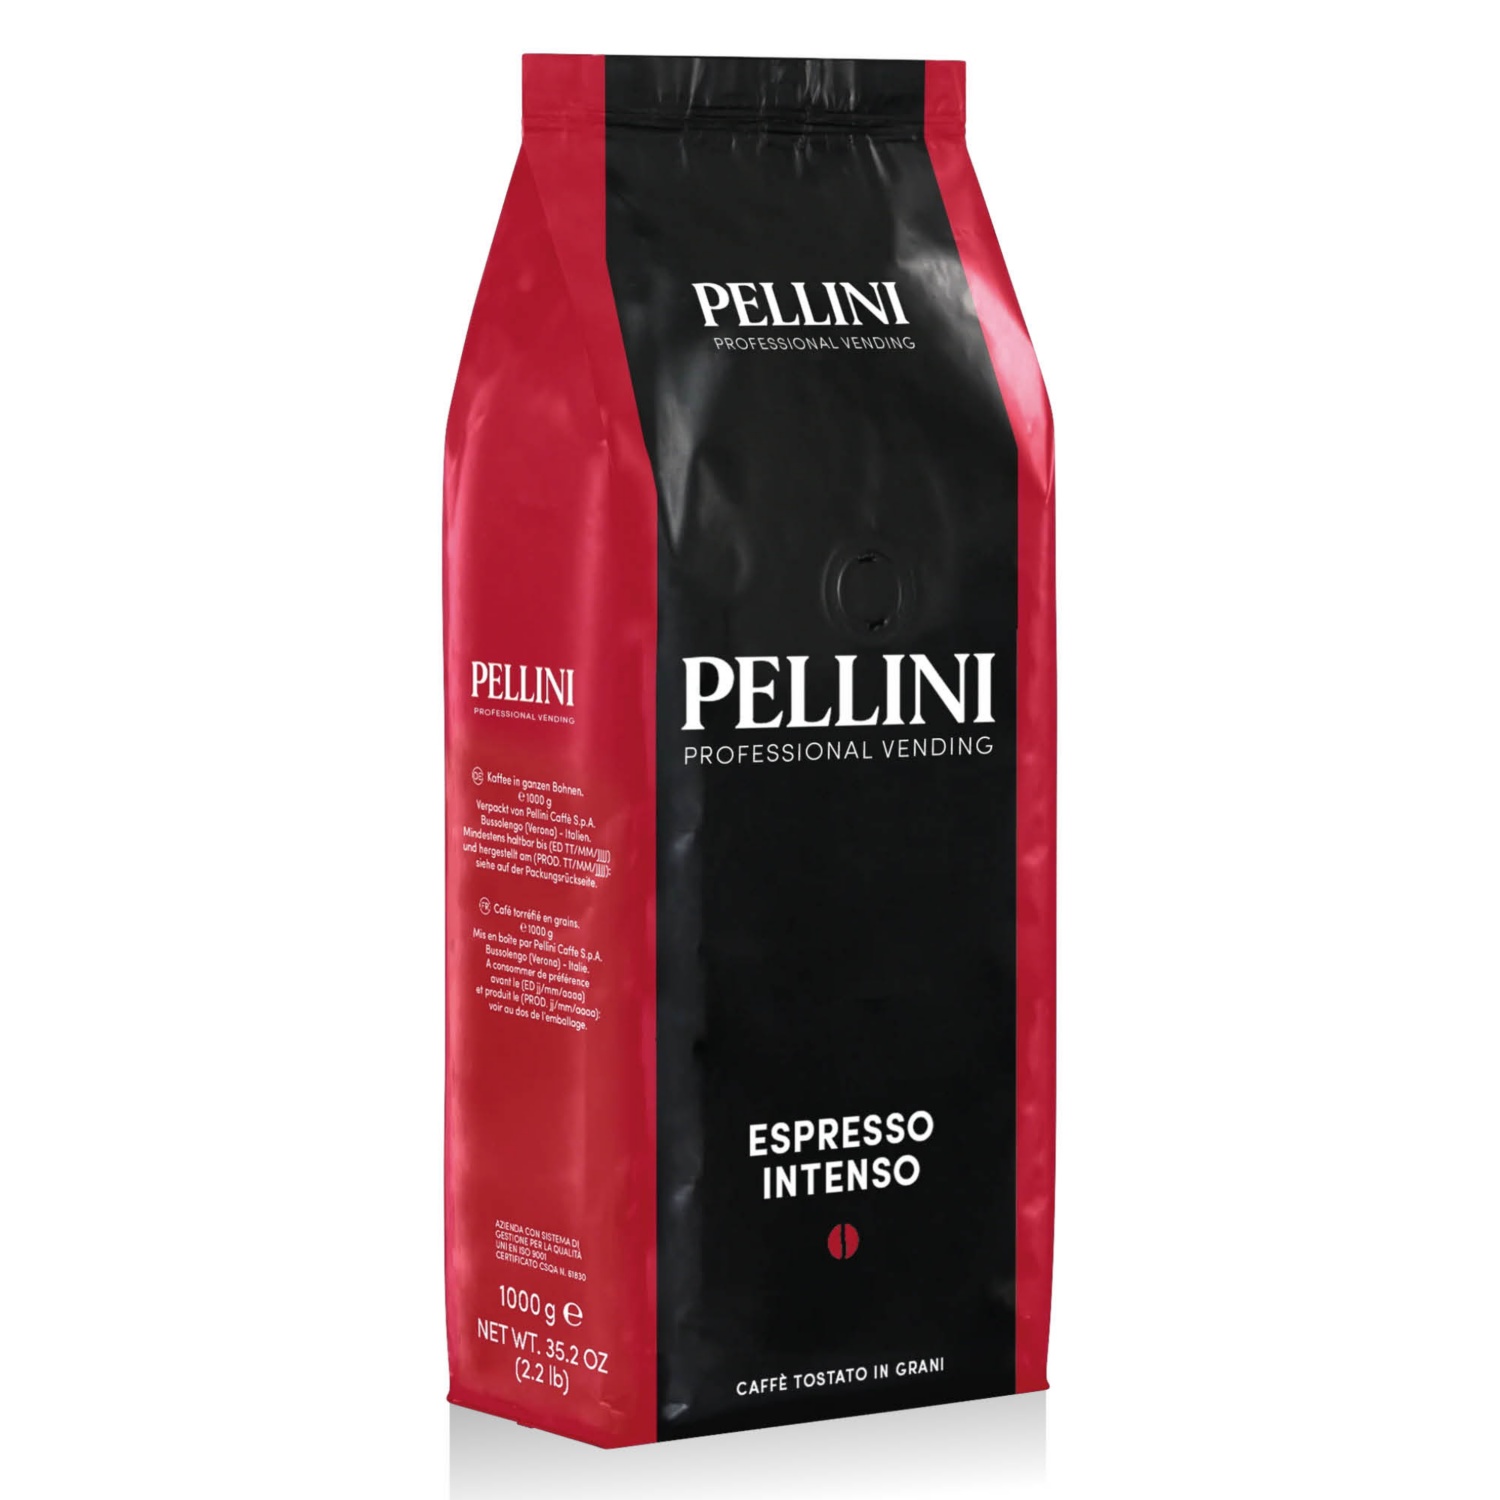 PELLINI Espresso Intenso, 1 kg